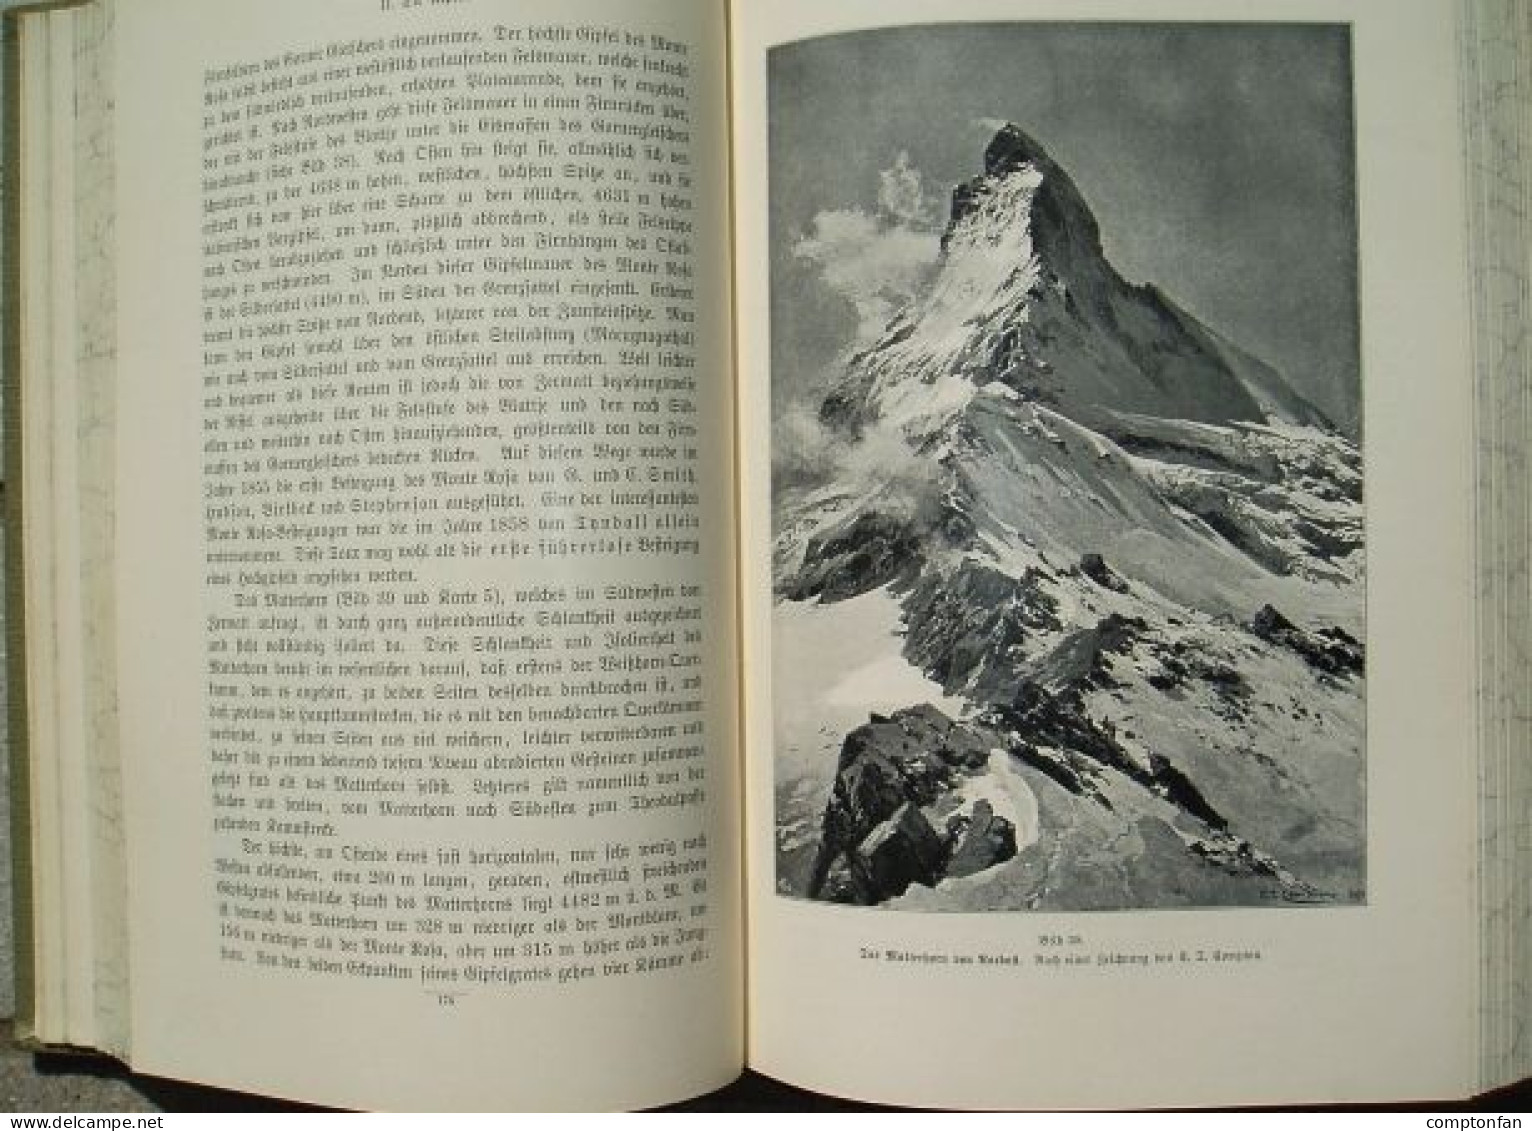 B100 878 Lendenfeld Hochgebirge der Erde Bergsteigen Alpinismus Compton Rarität 1899 !!